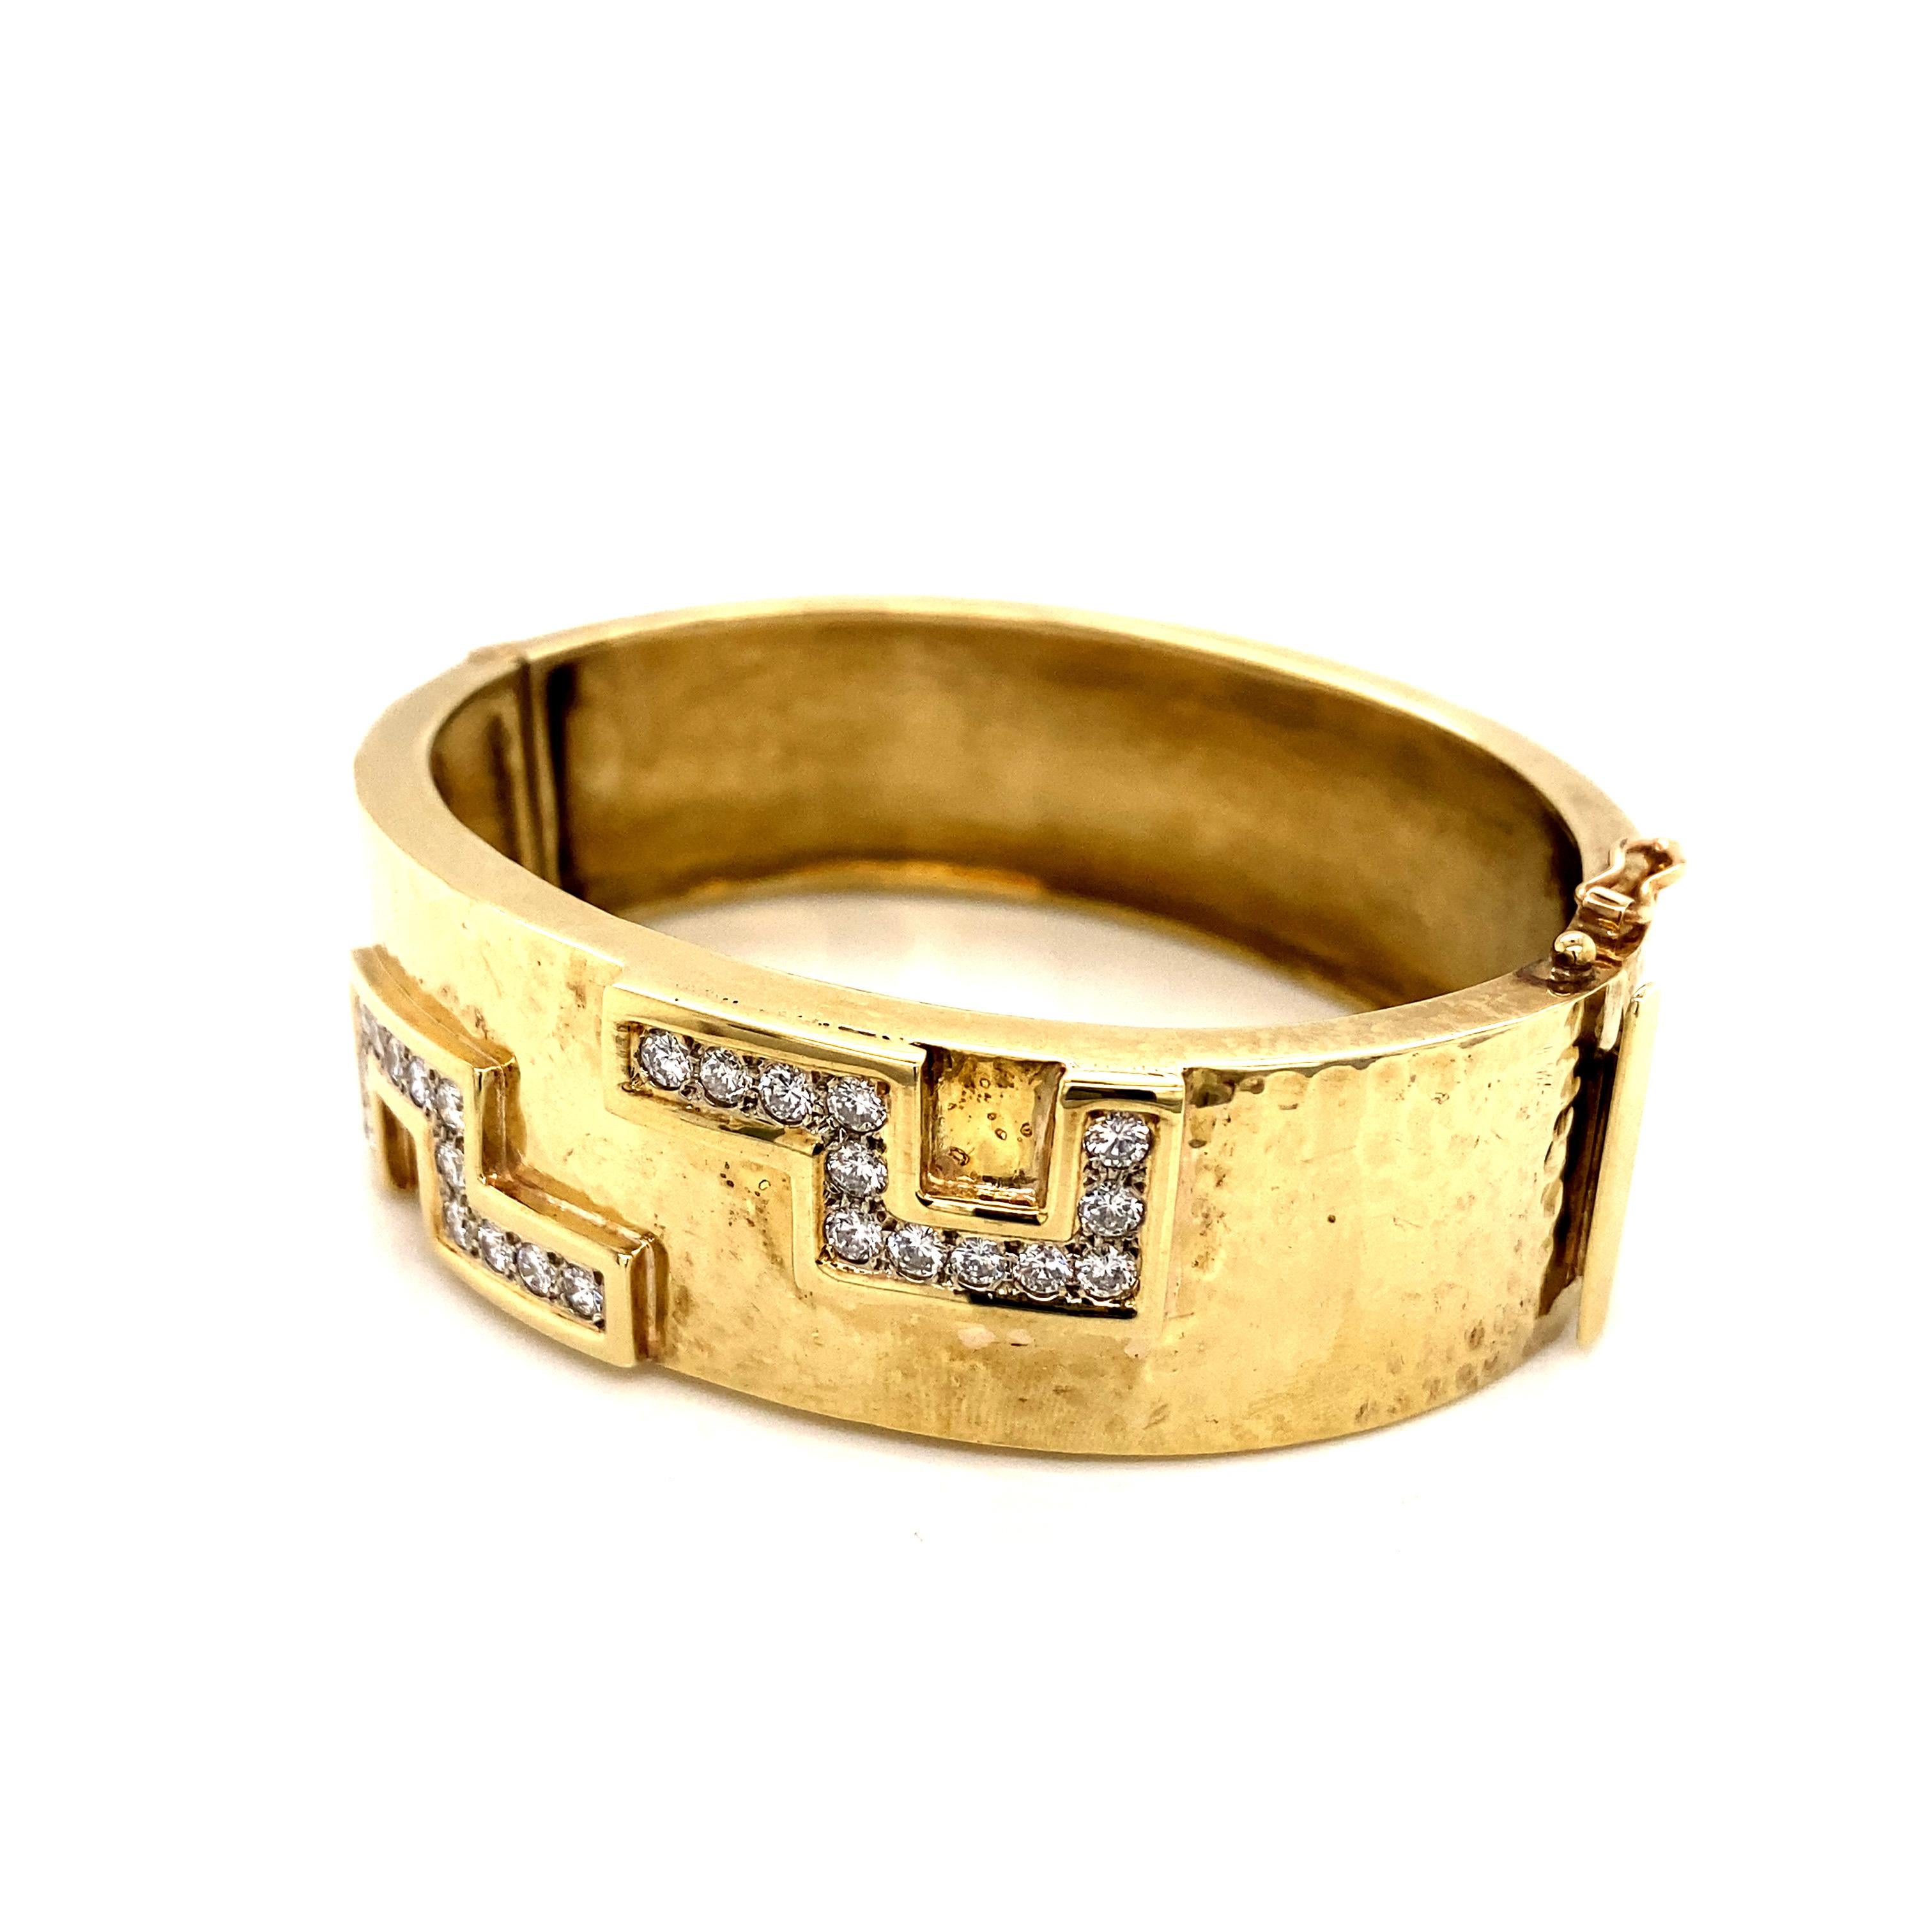 Véritable pièce d'apparat des années 1990, ce superbe bracelet en or jaune 14 carats respire le luxe et le glamour intemporels. Le bracelet substantiel est doté d'une bande large et substantielle qui mesure une largeur impressionnante de 0,75 pouce